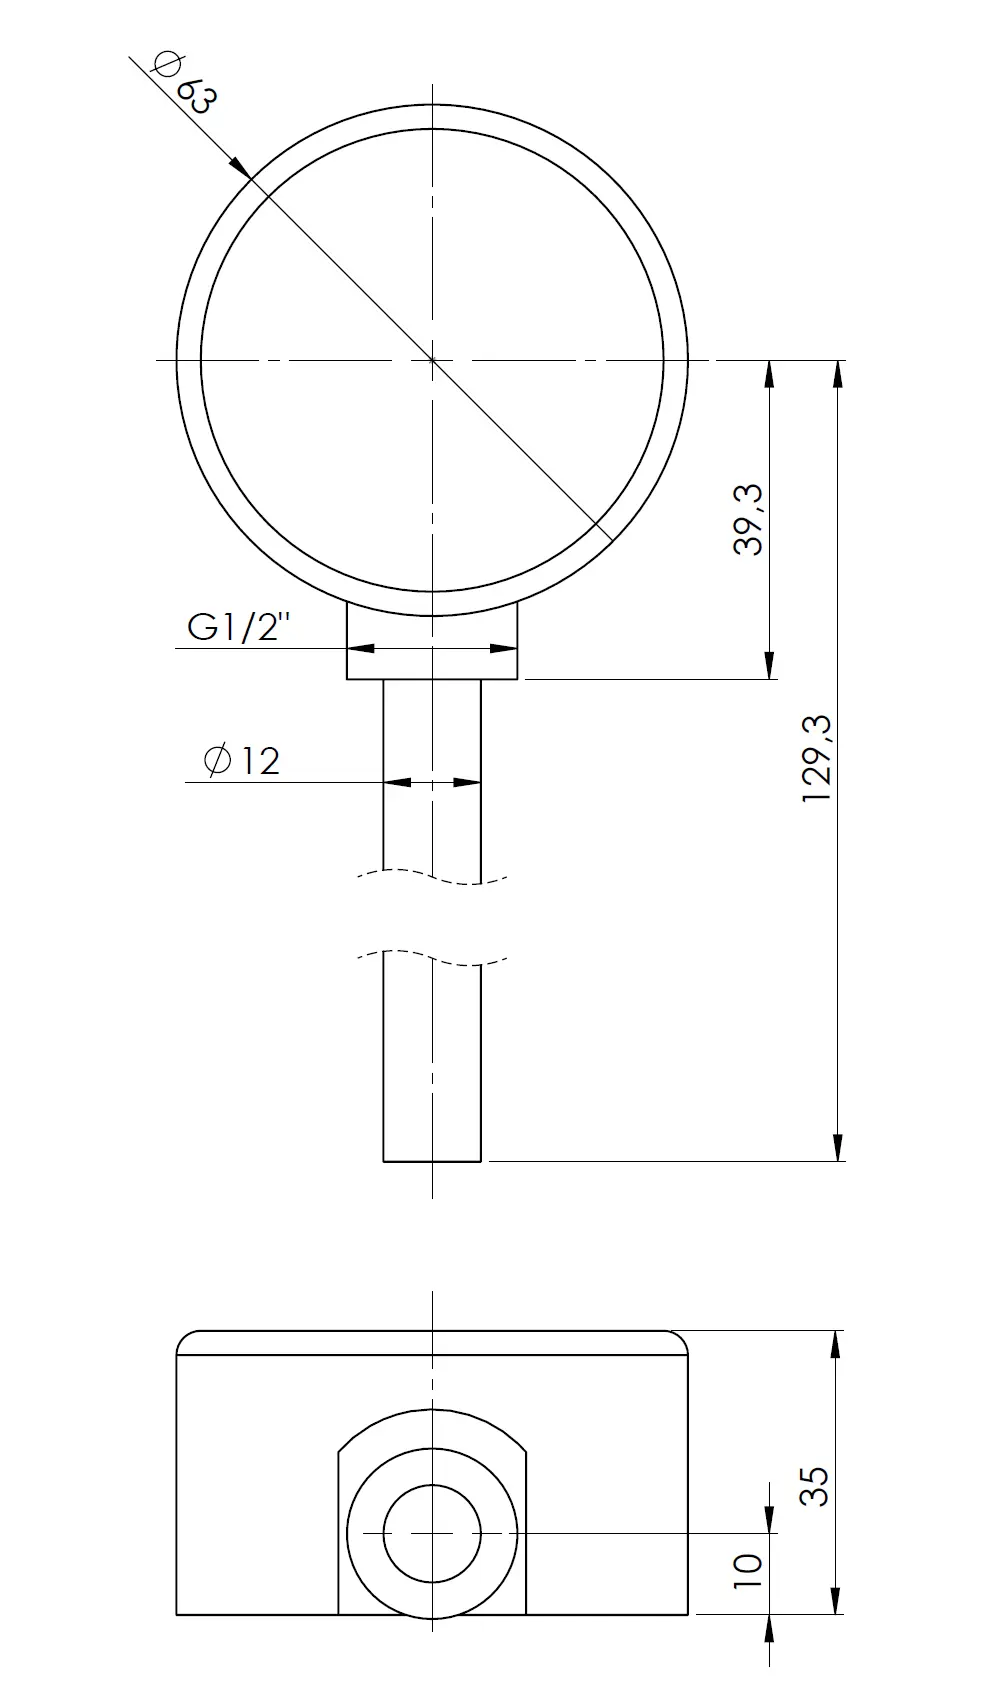 Termometr bimetaliczny BiTh 63, fi63 mm, 0÷60°C, L 100 mm, G1/2", rad, kl. 2 - budowa